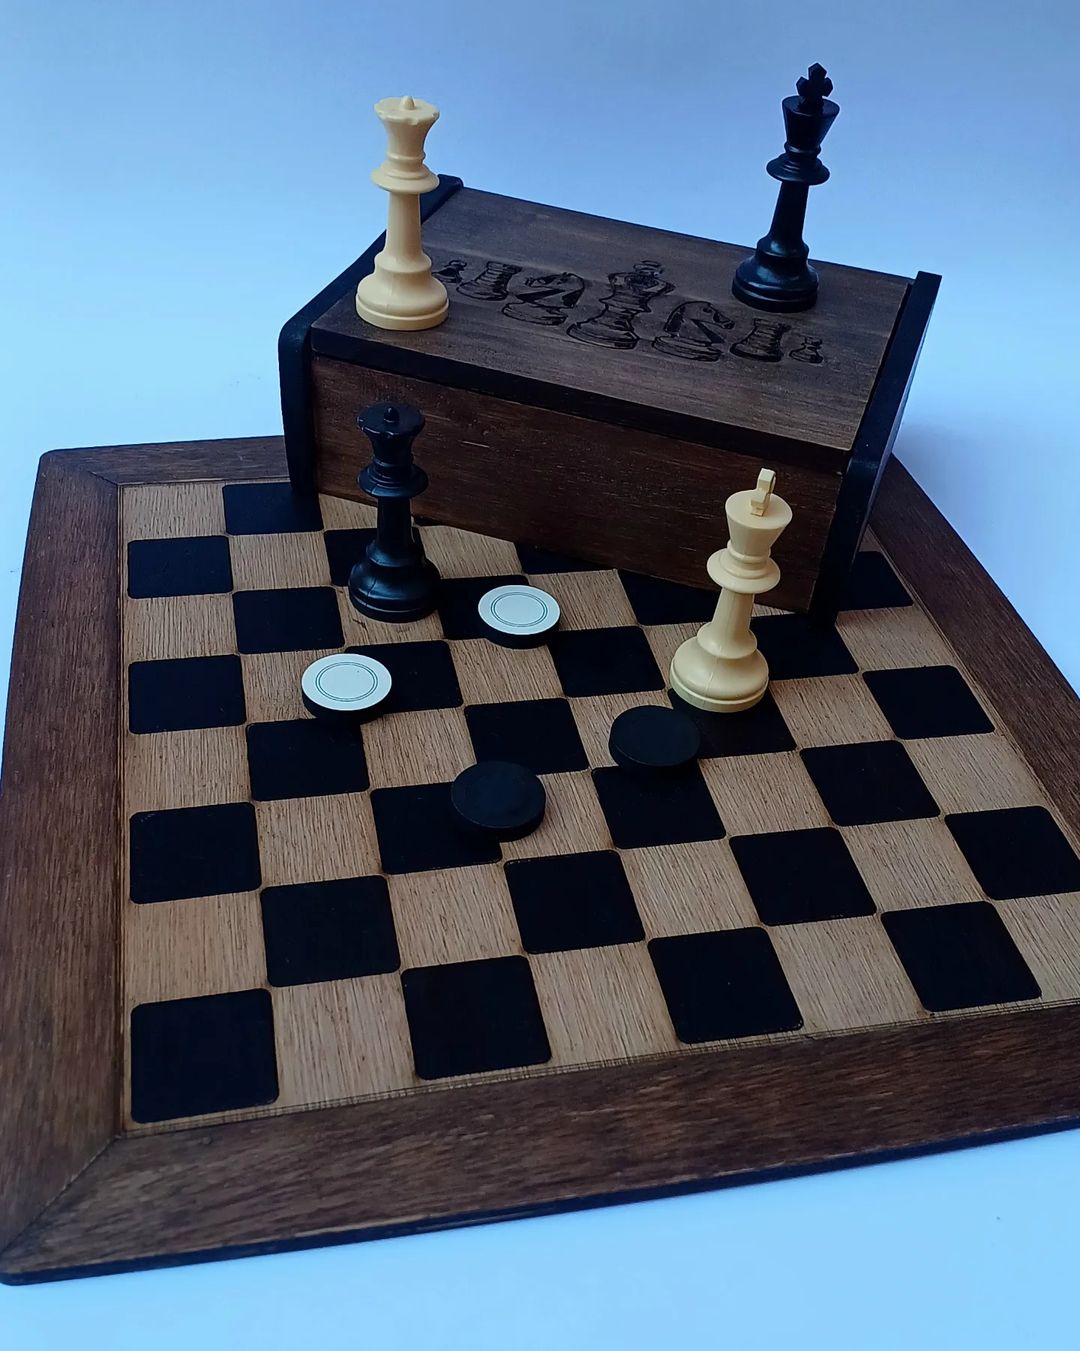 Xadrez é arte - Tabuleiro feito em madeira, esculpido, lixado e